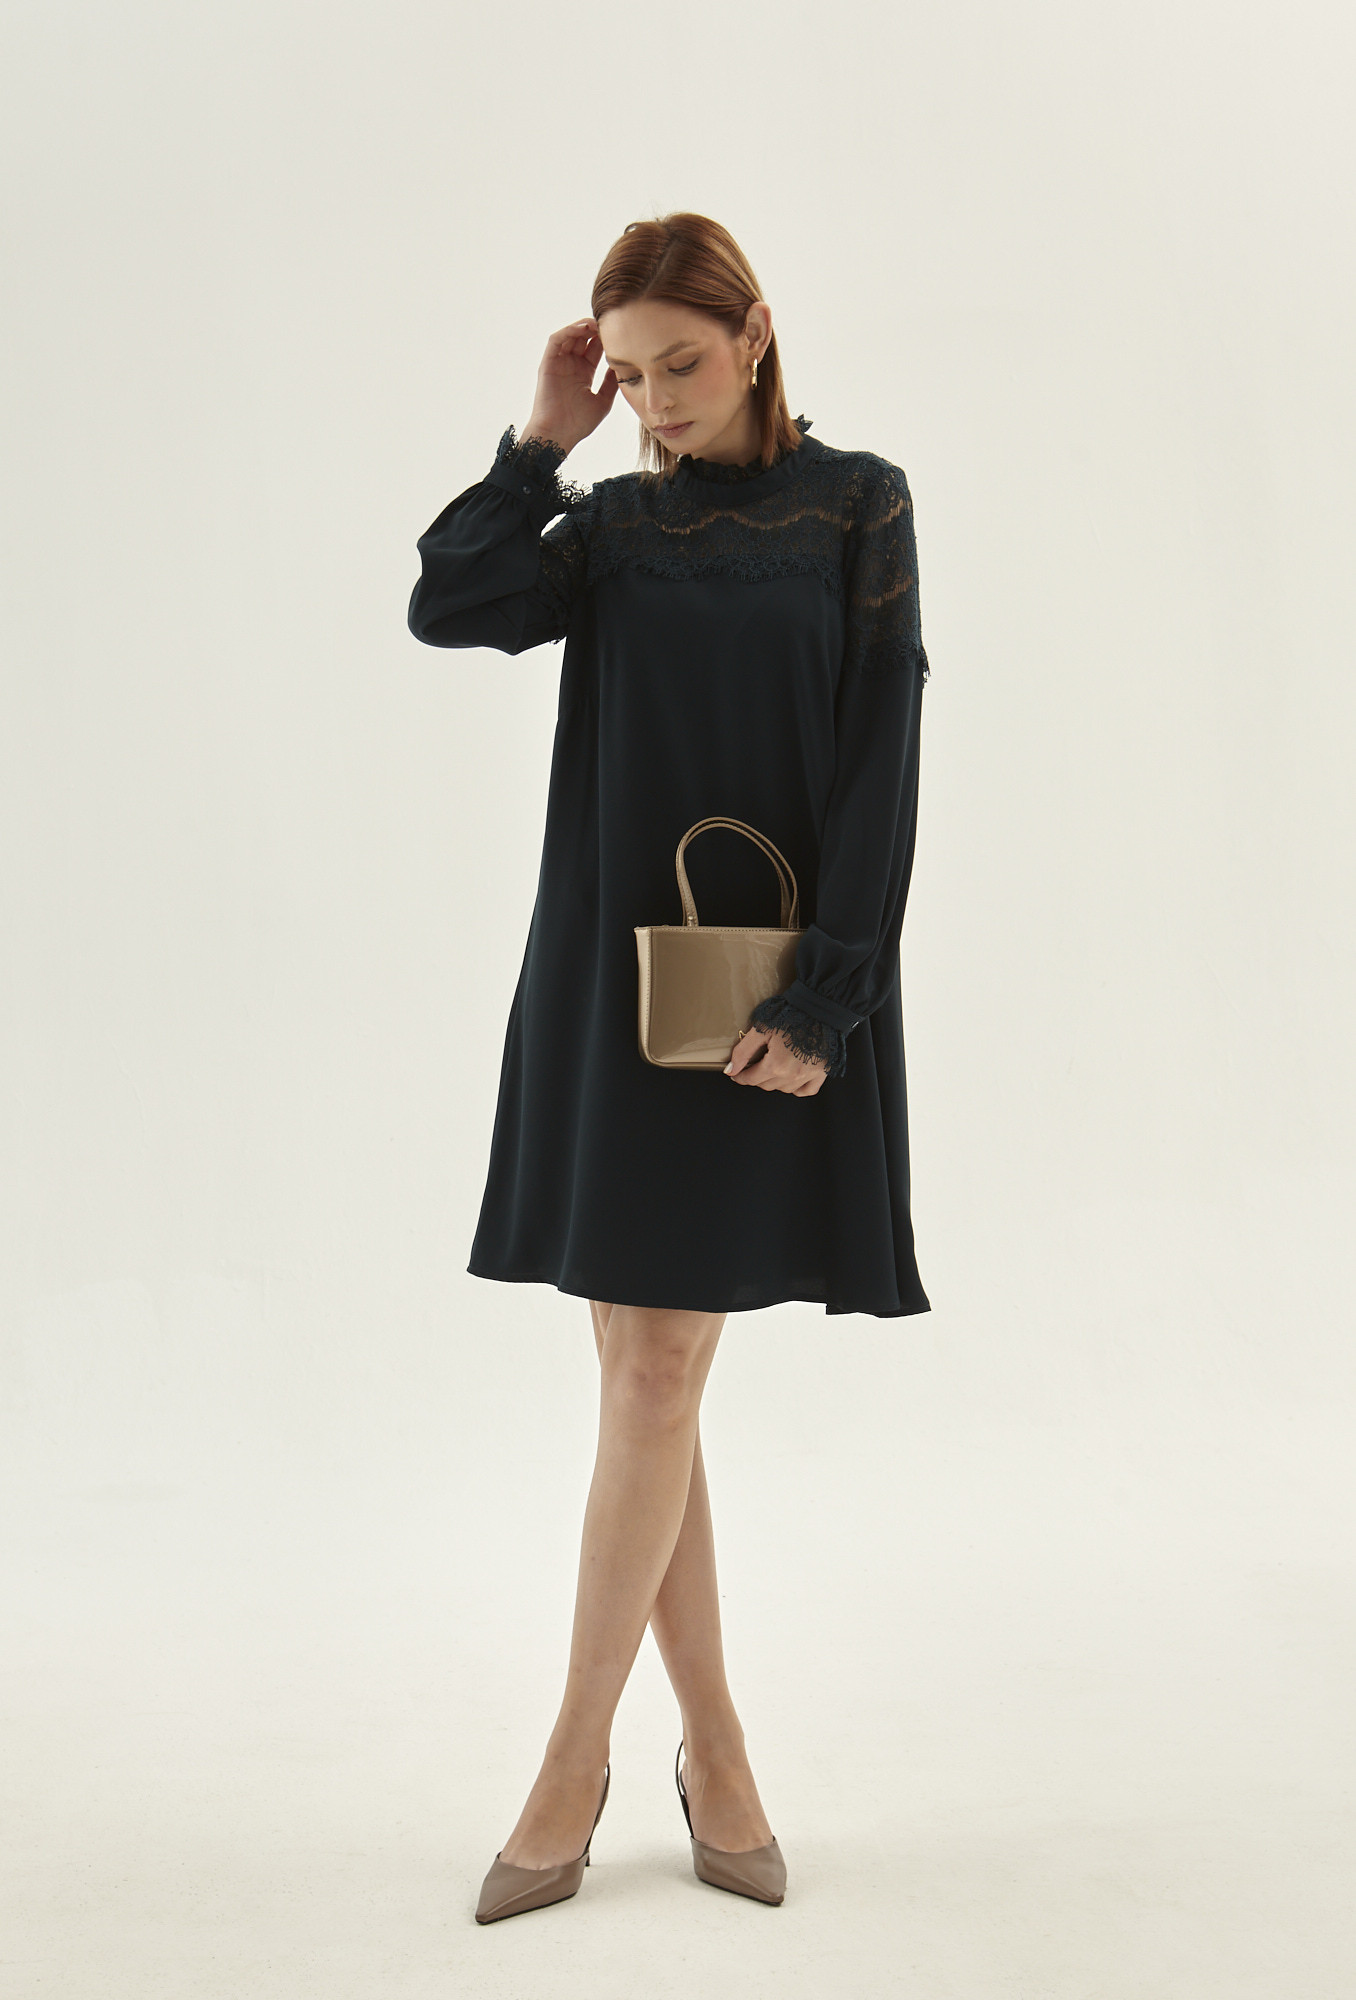 Monnari Šaty Černé šaty s krajkovým panelem Multi Turqoise 40